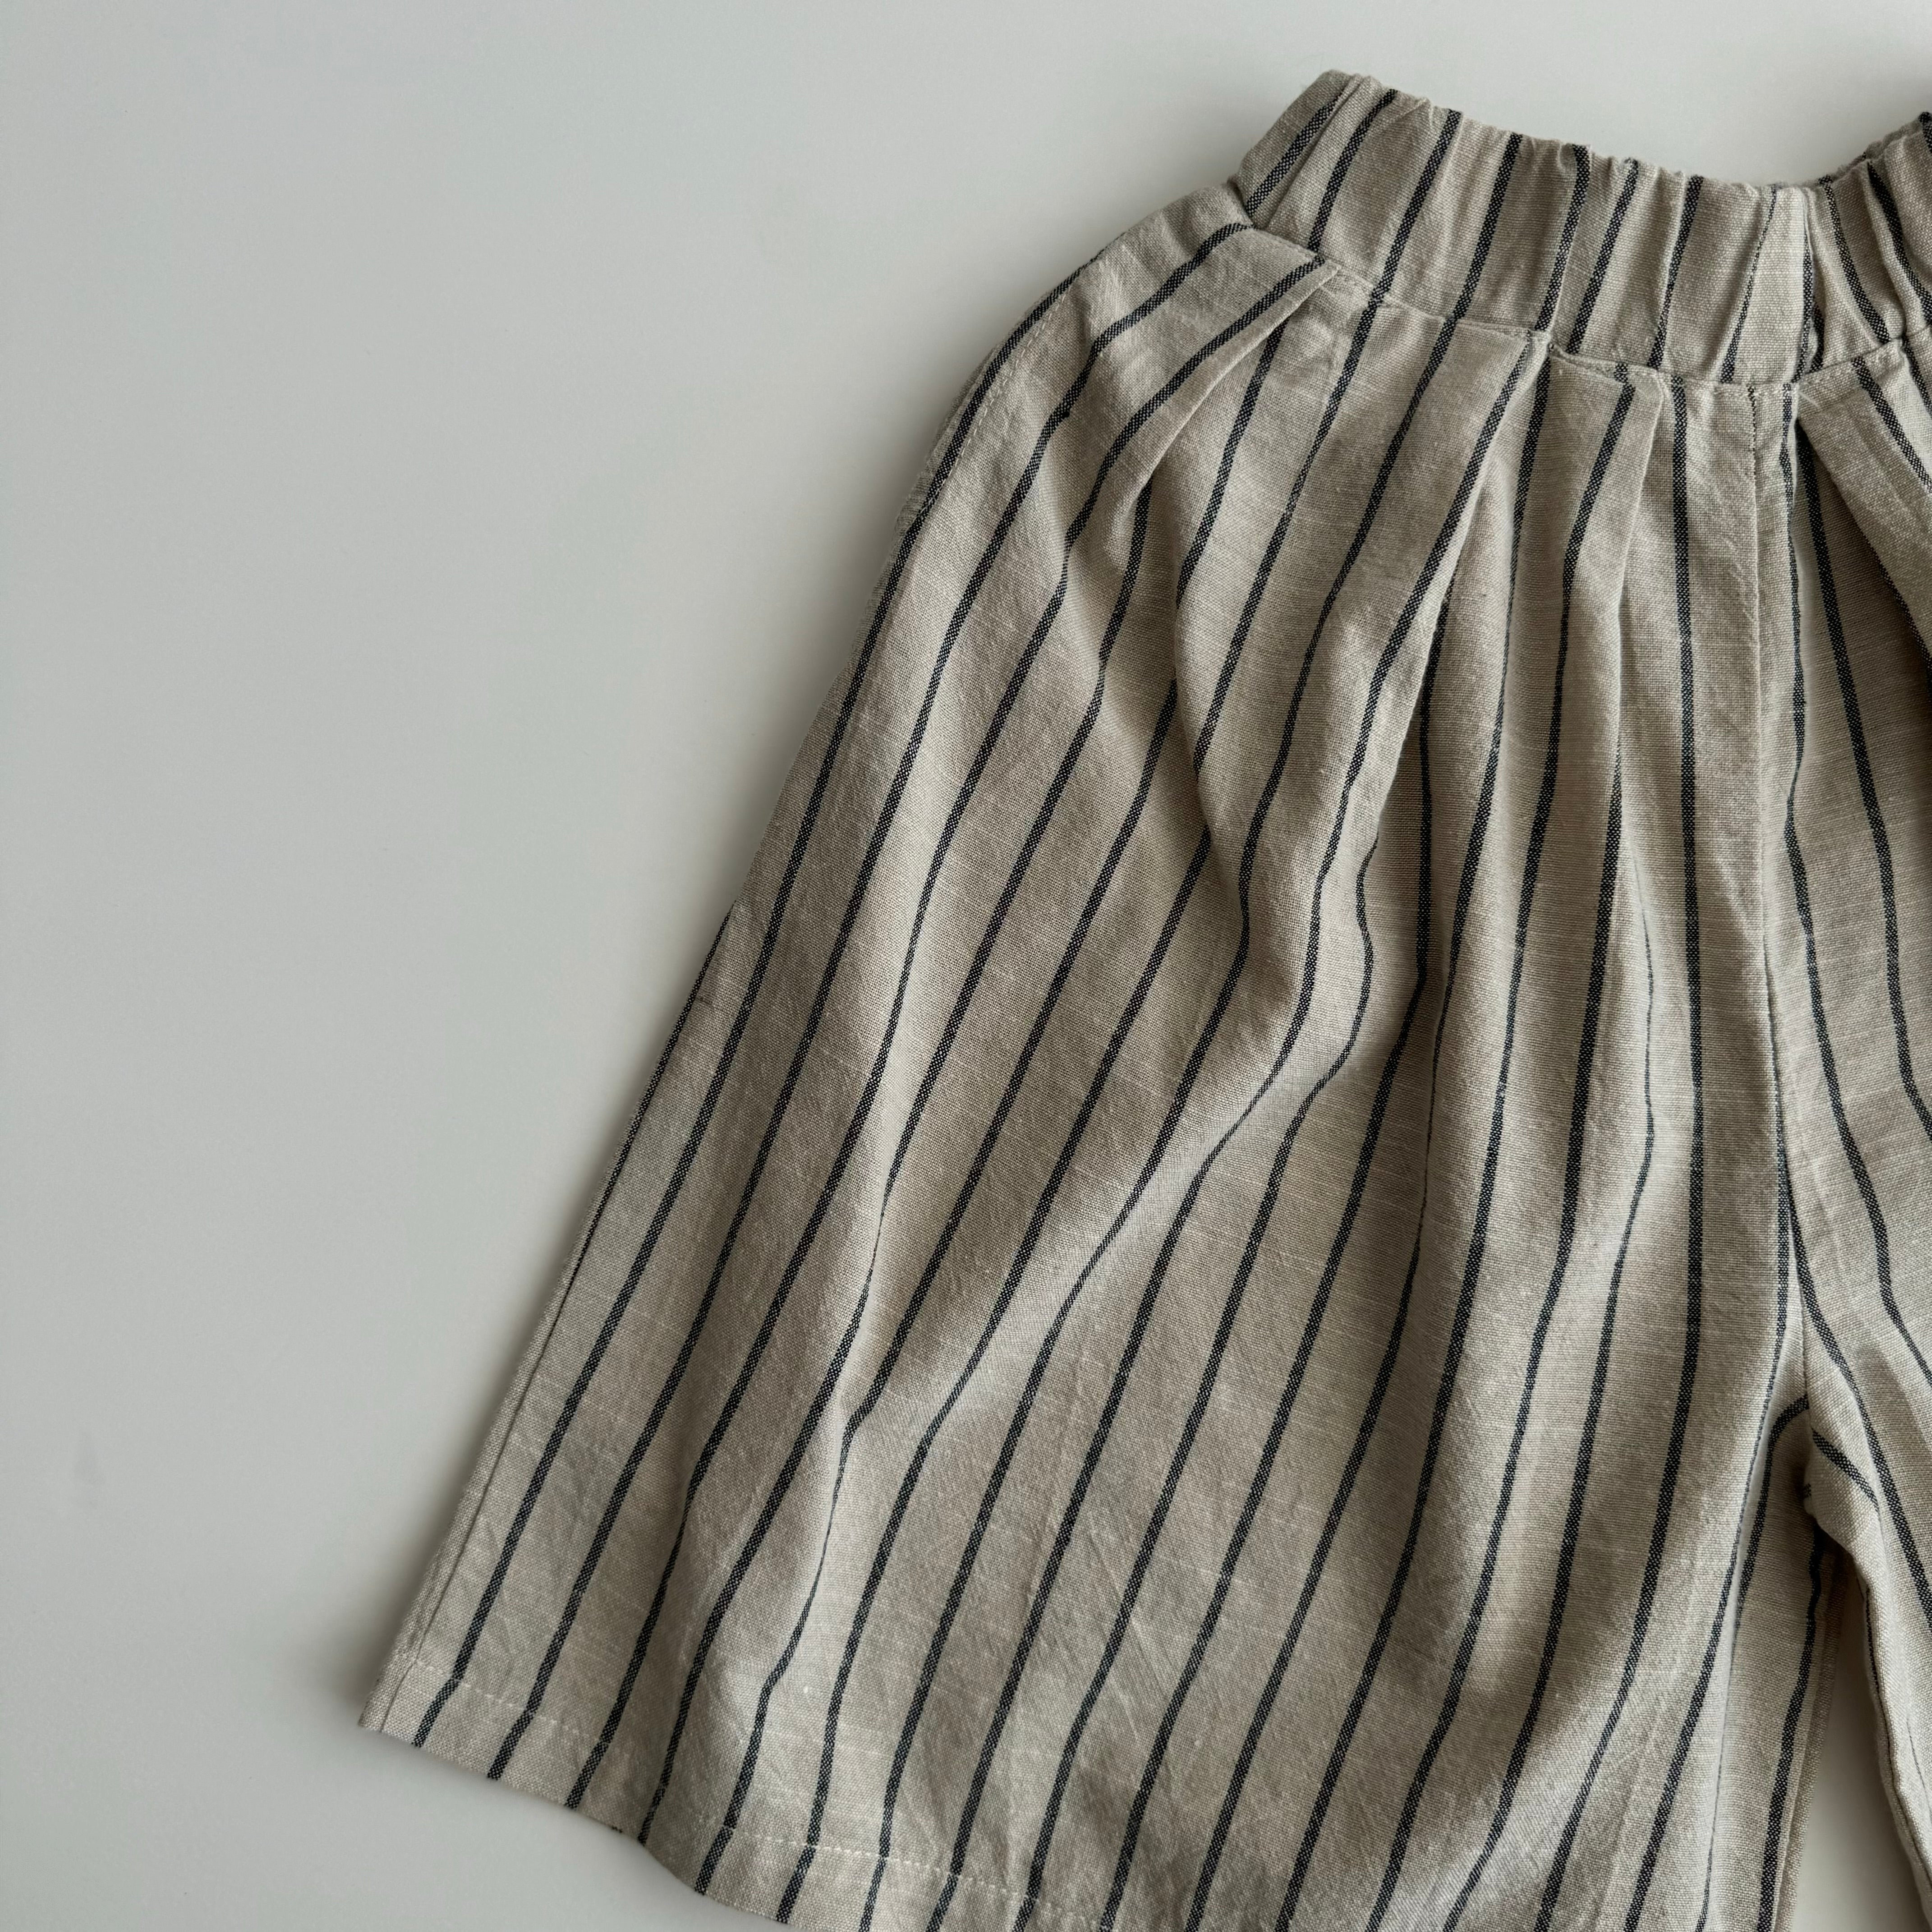 Pants-skirt "Lea" - PaPeony